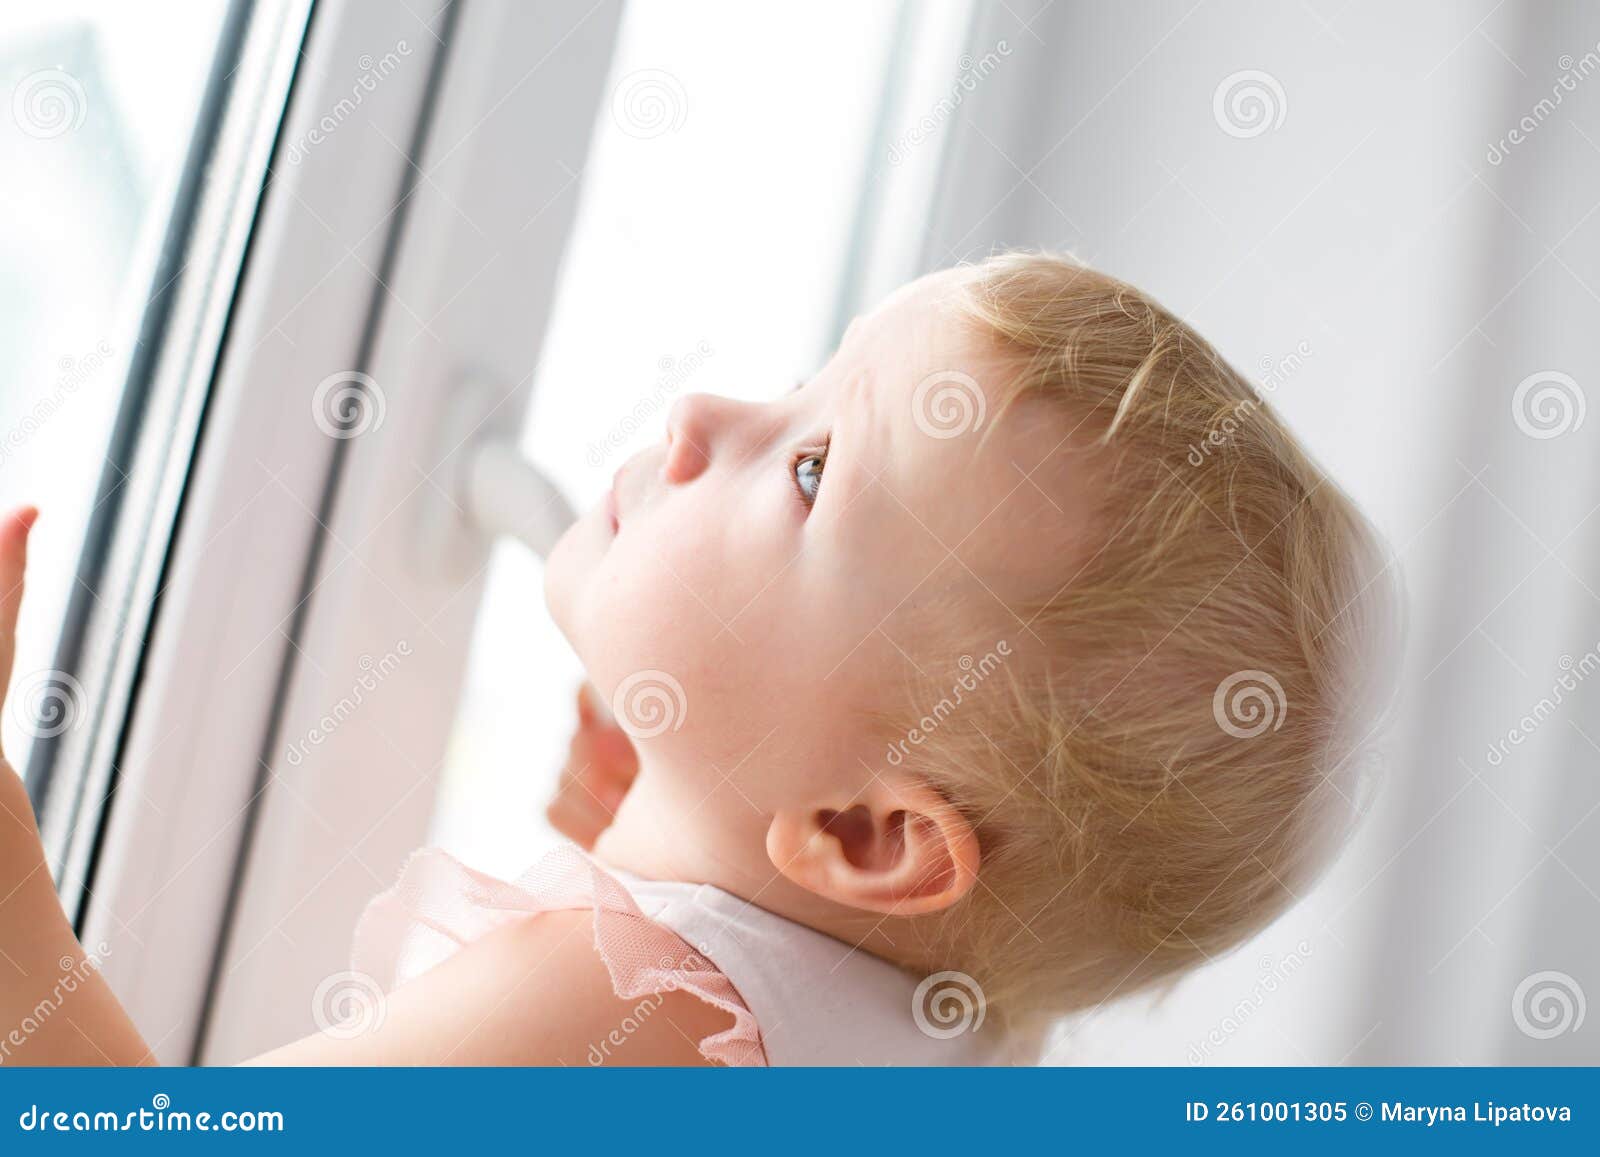 Bébé Essaie D'ouvrir La Fenêtre Dans L'appartement. Pas De Verrou Sur La  Fenêtre. Foyer Dangereux Pour Bébé. Sécurité à L'automne Image stock -  Image du soin, santé: 261001305